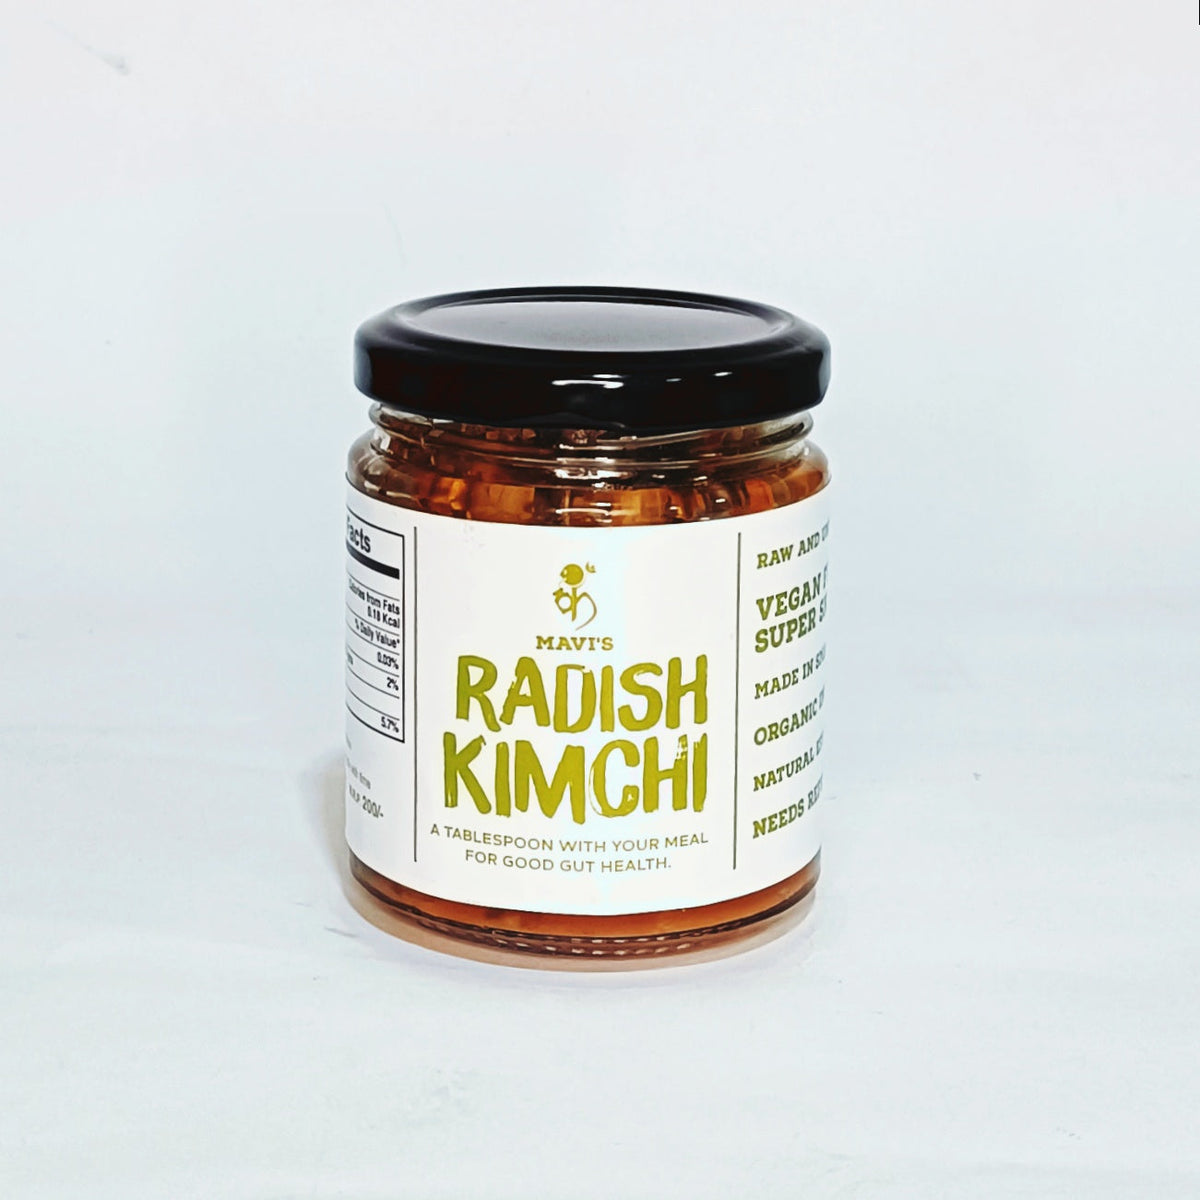 MAVI's Radish kimchi